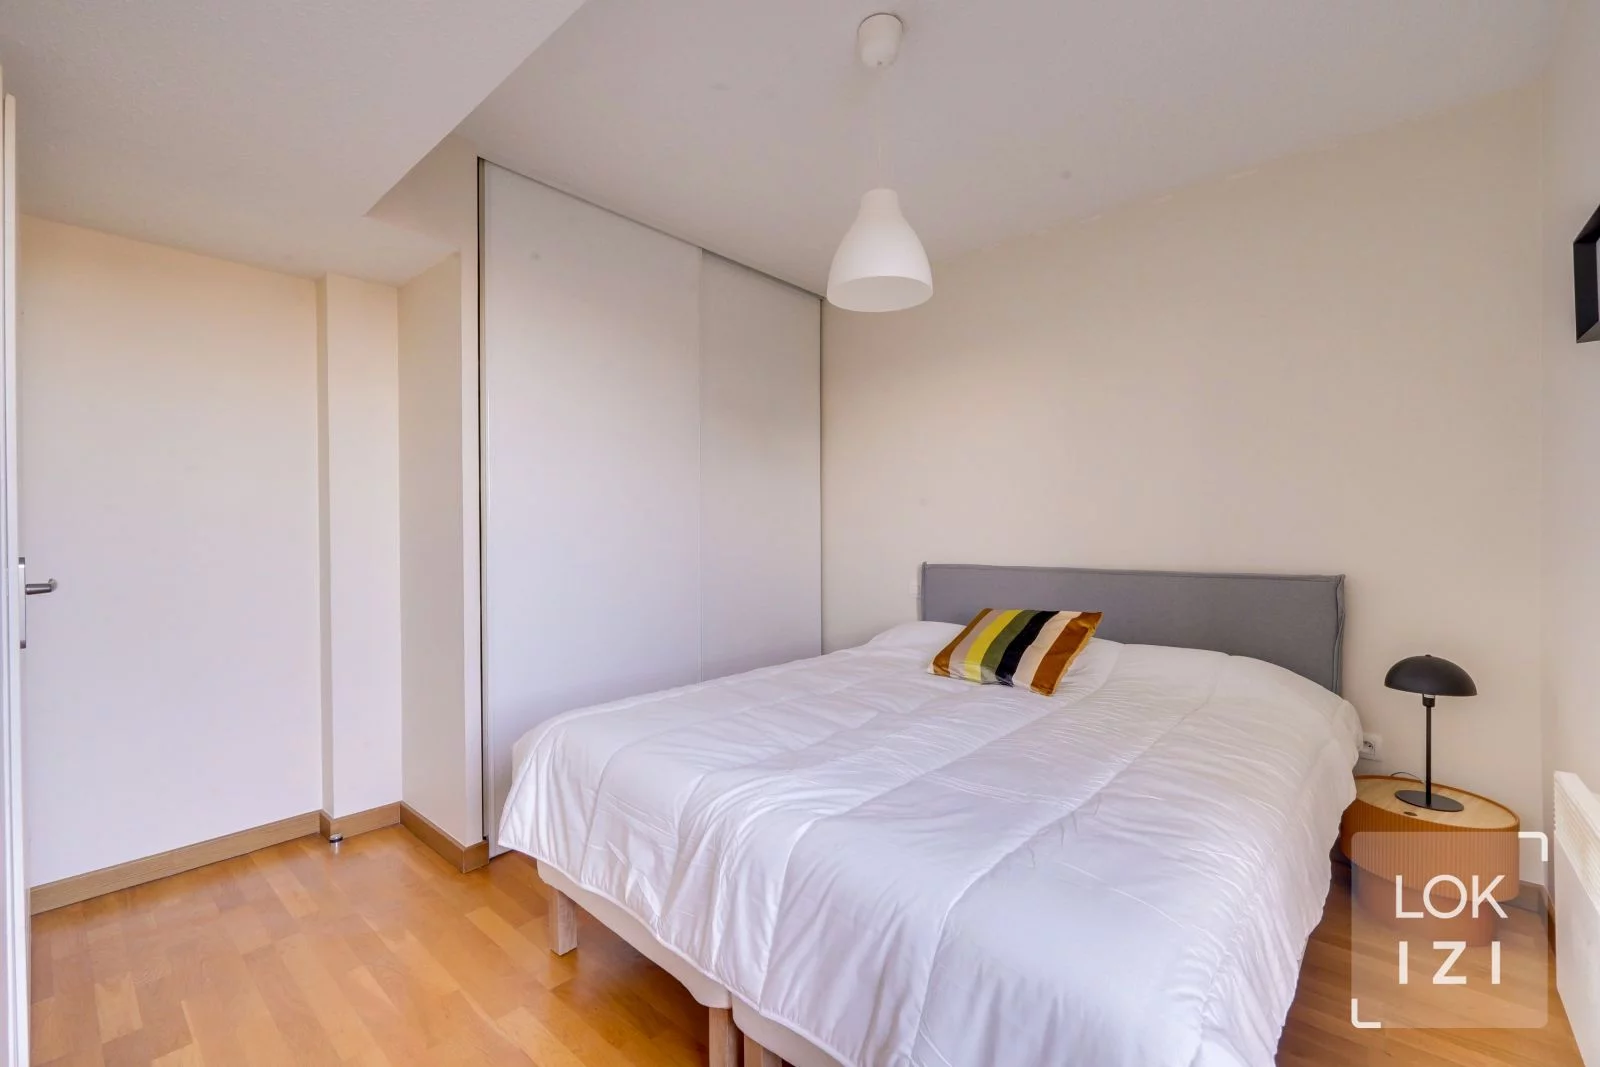 Location appartement meublé 3 pièces 55m² (Bordeaux - Chartrons Grand Parc)